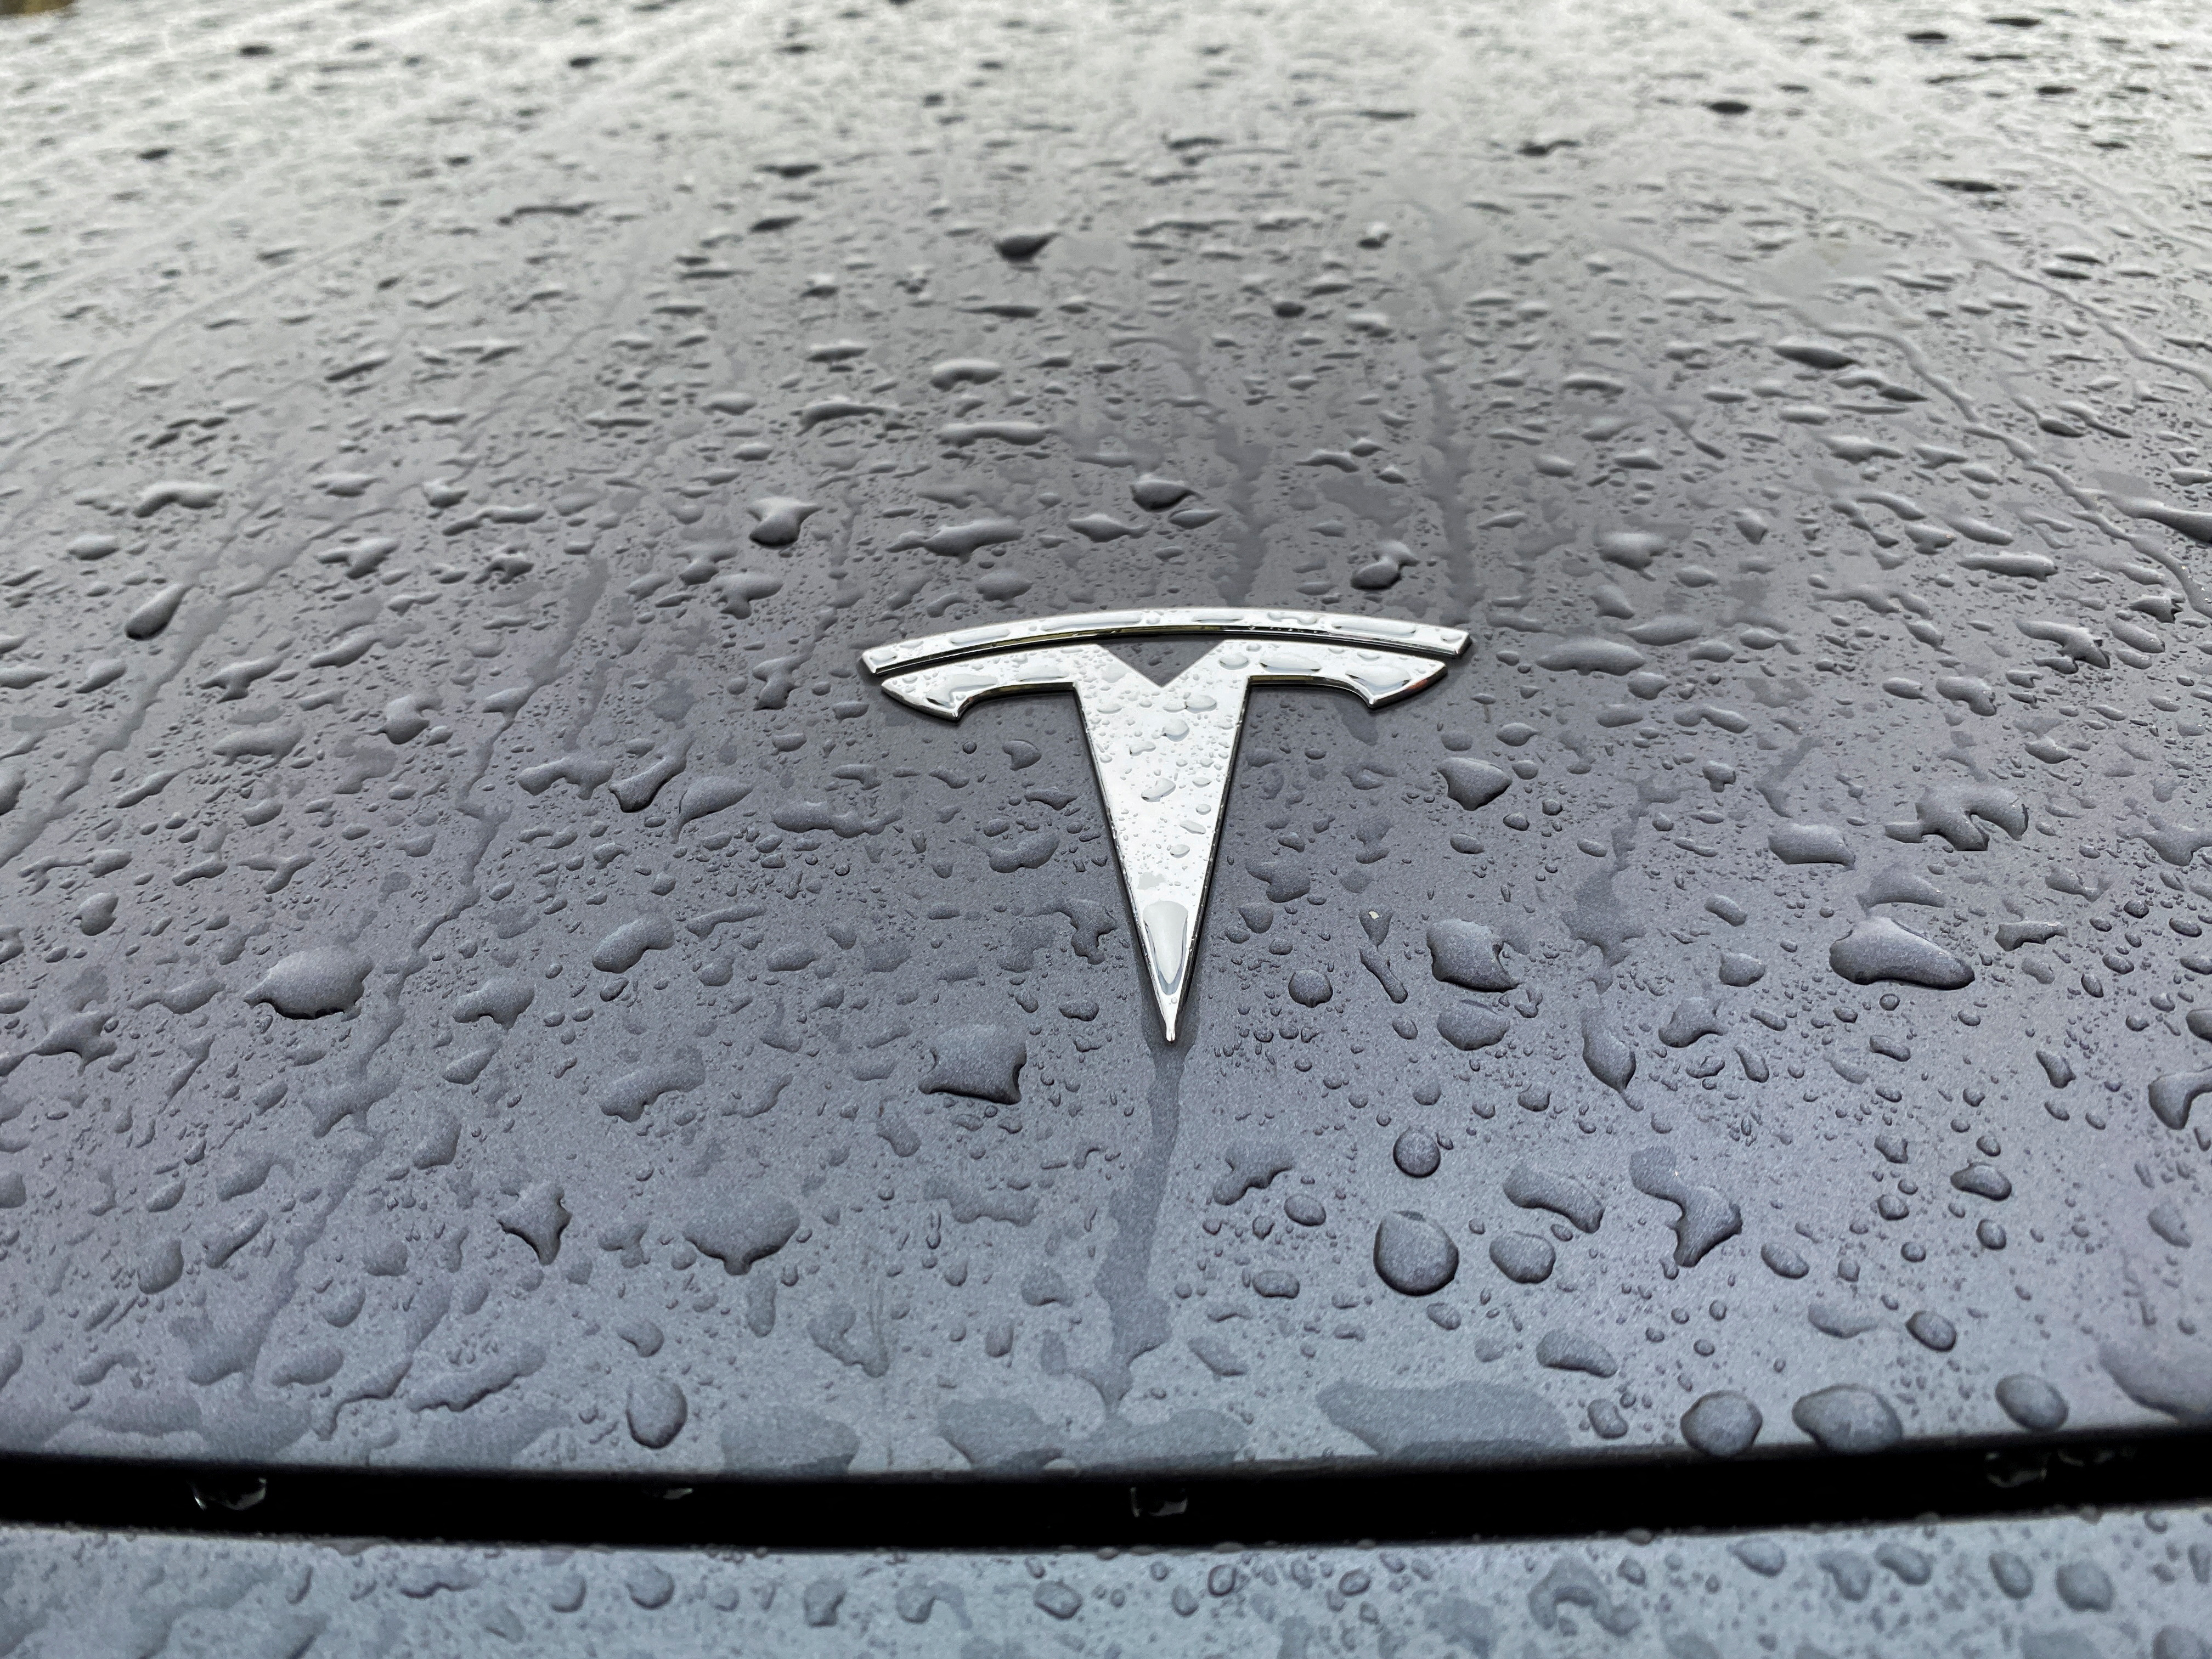 Profits historiques pour Tesla qui va encore augmenter sa production en 2023